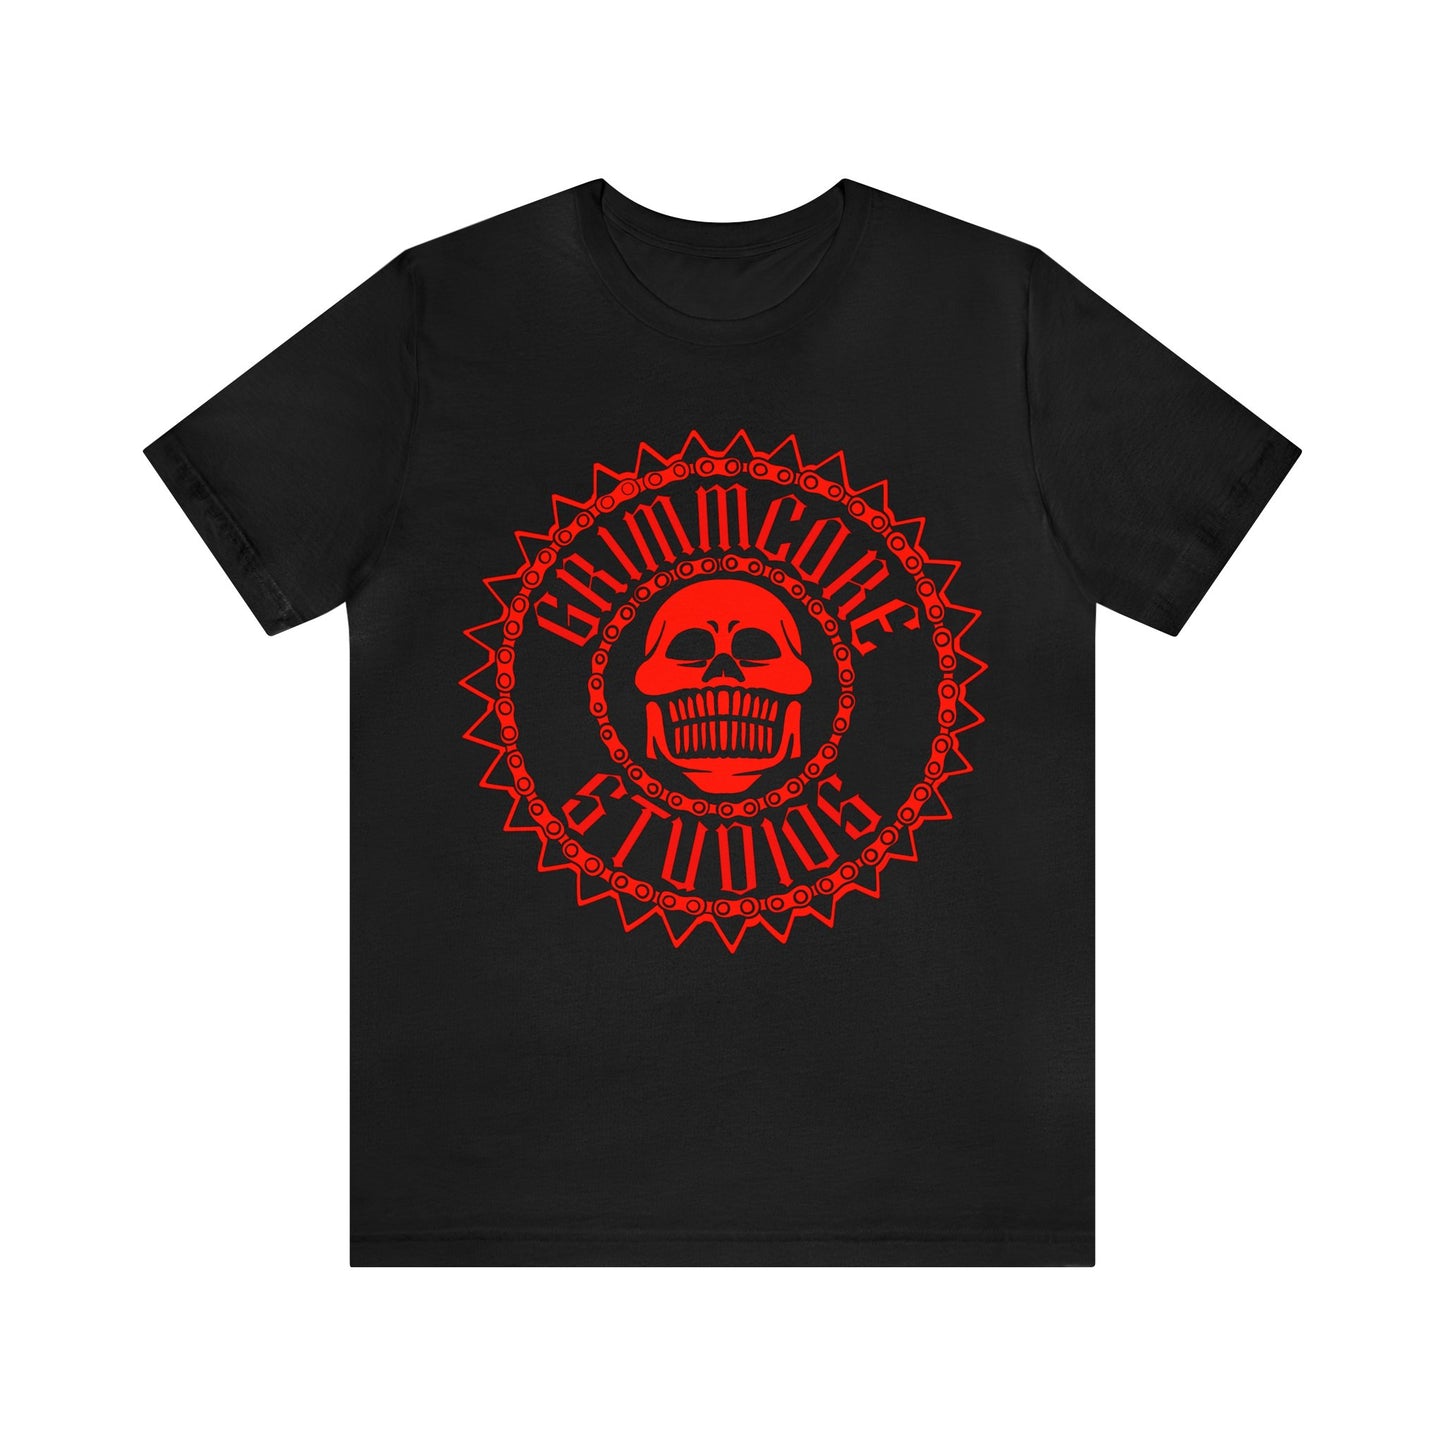 Grimmcore Studios T-Shirt